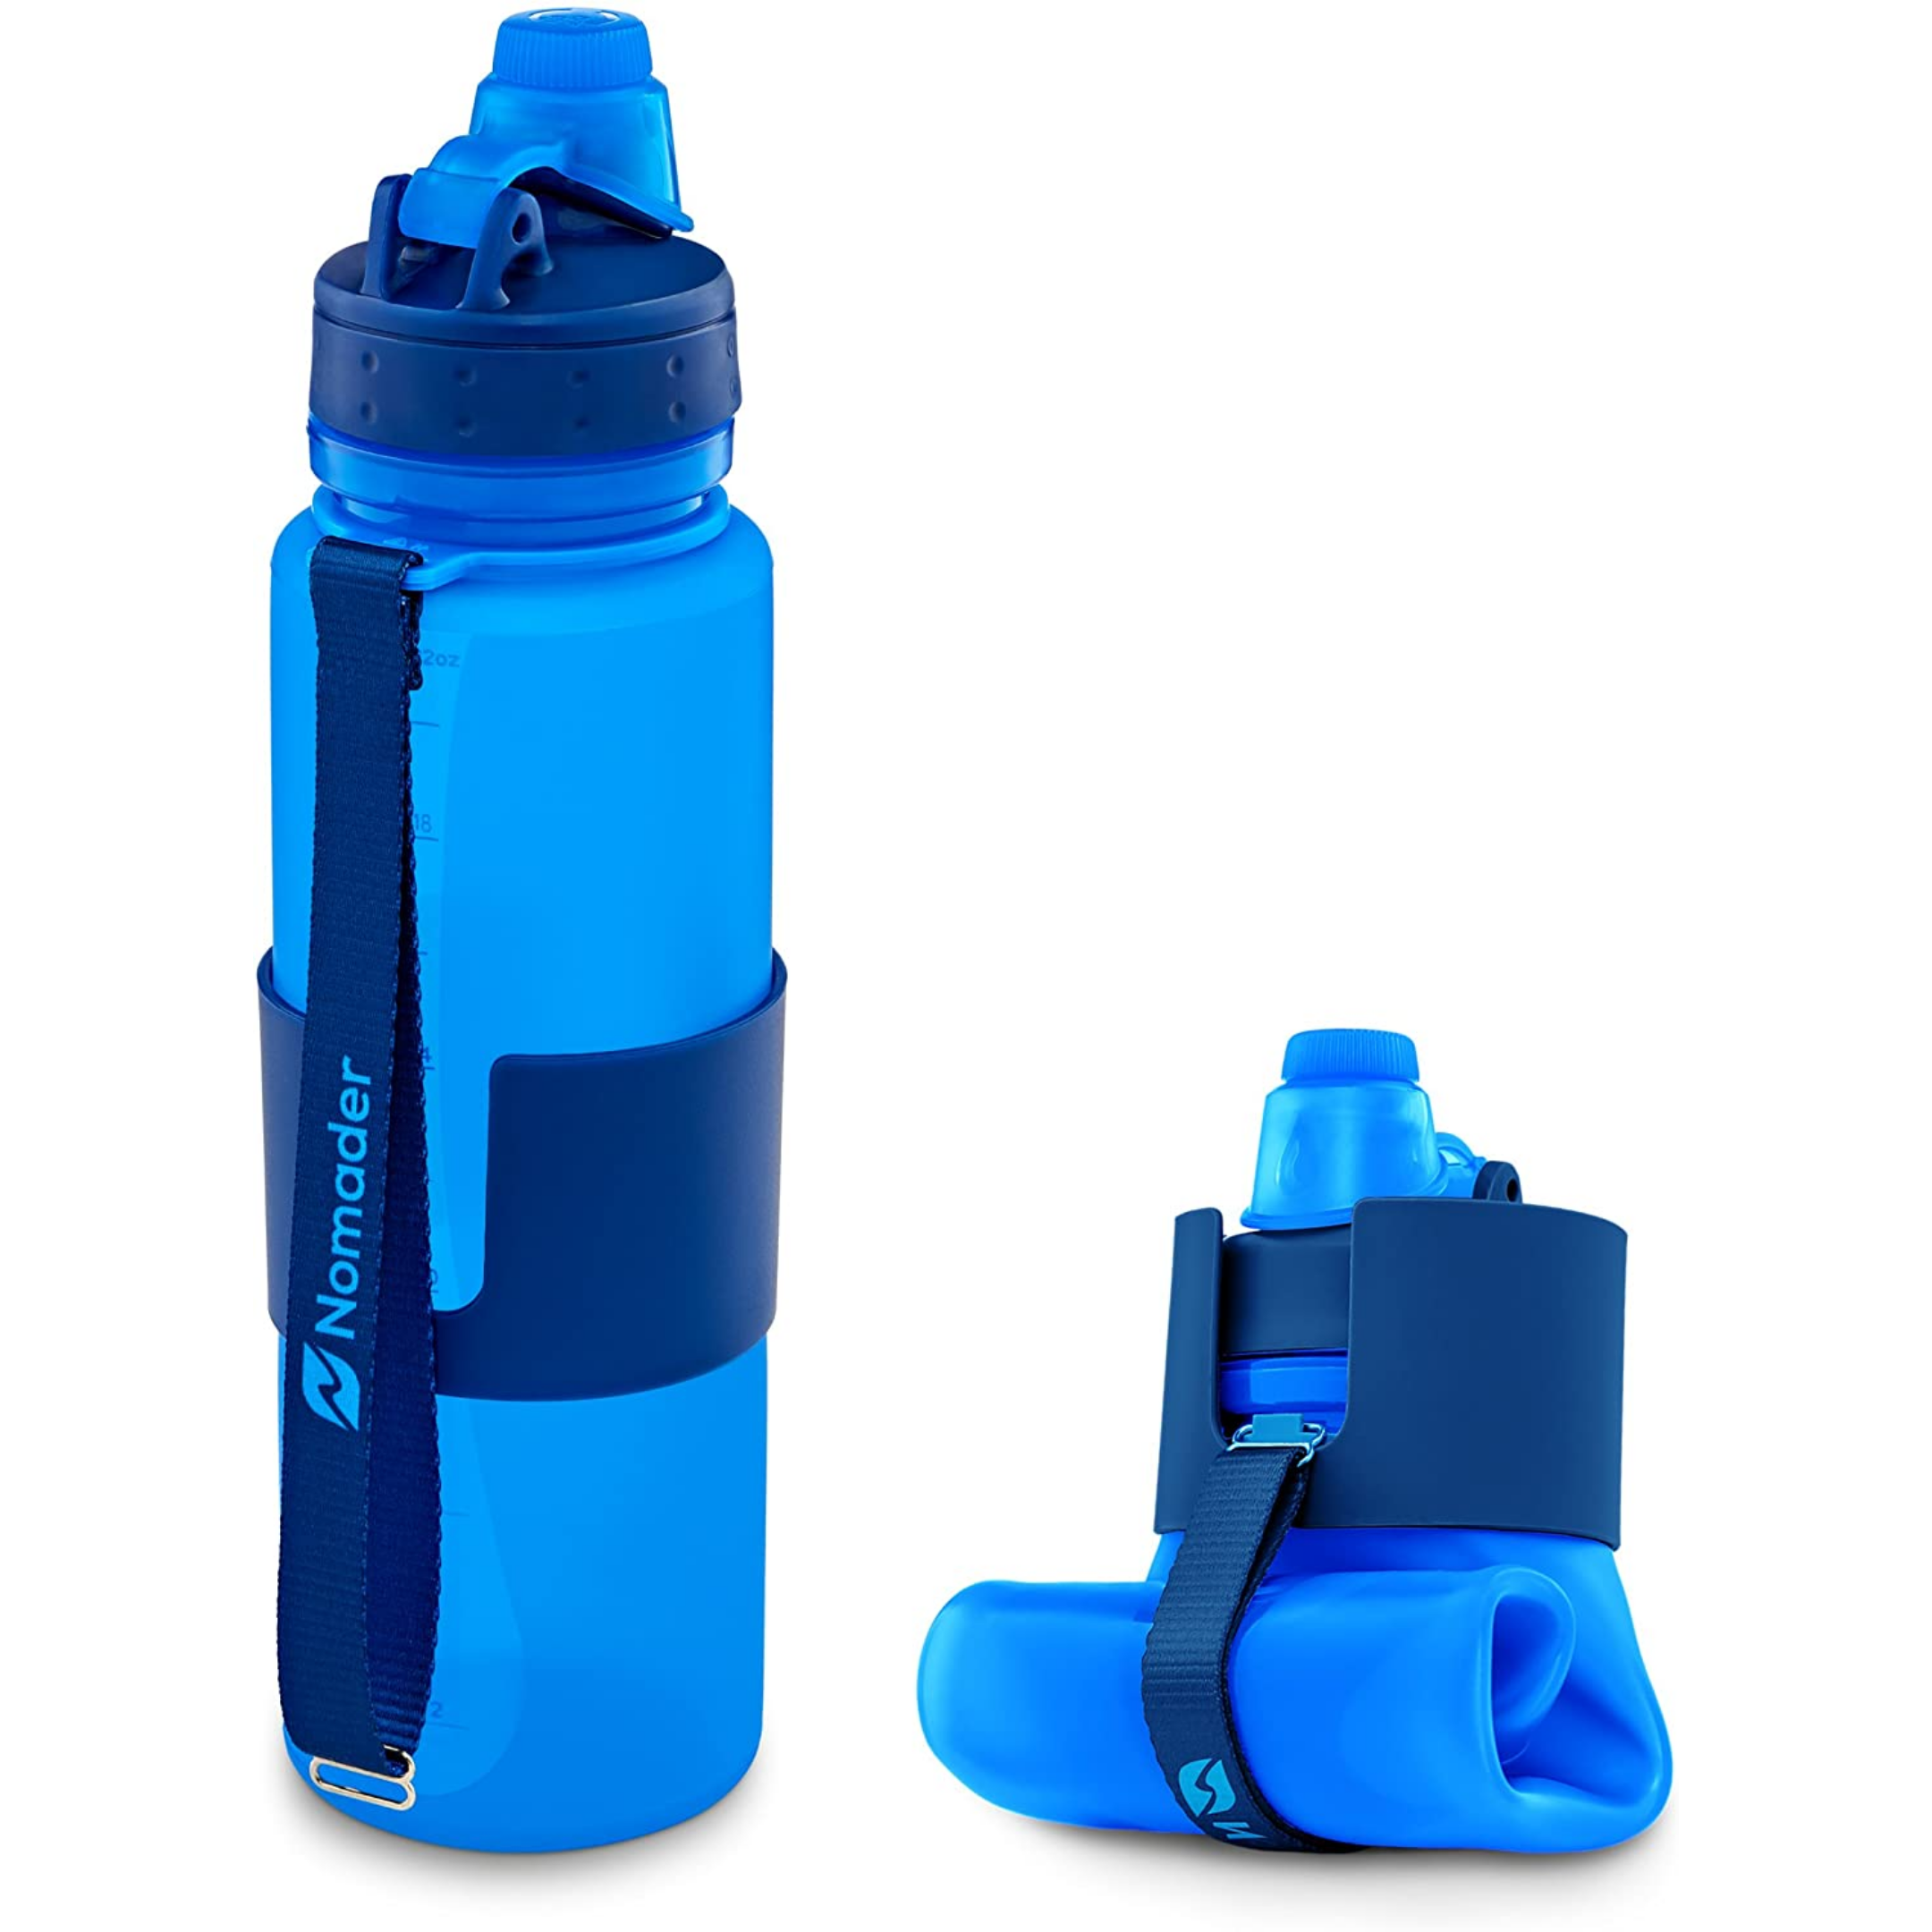 Складная бутылка для воды Collapsible Bottle - удобный и полезный аксессуар